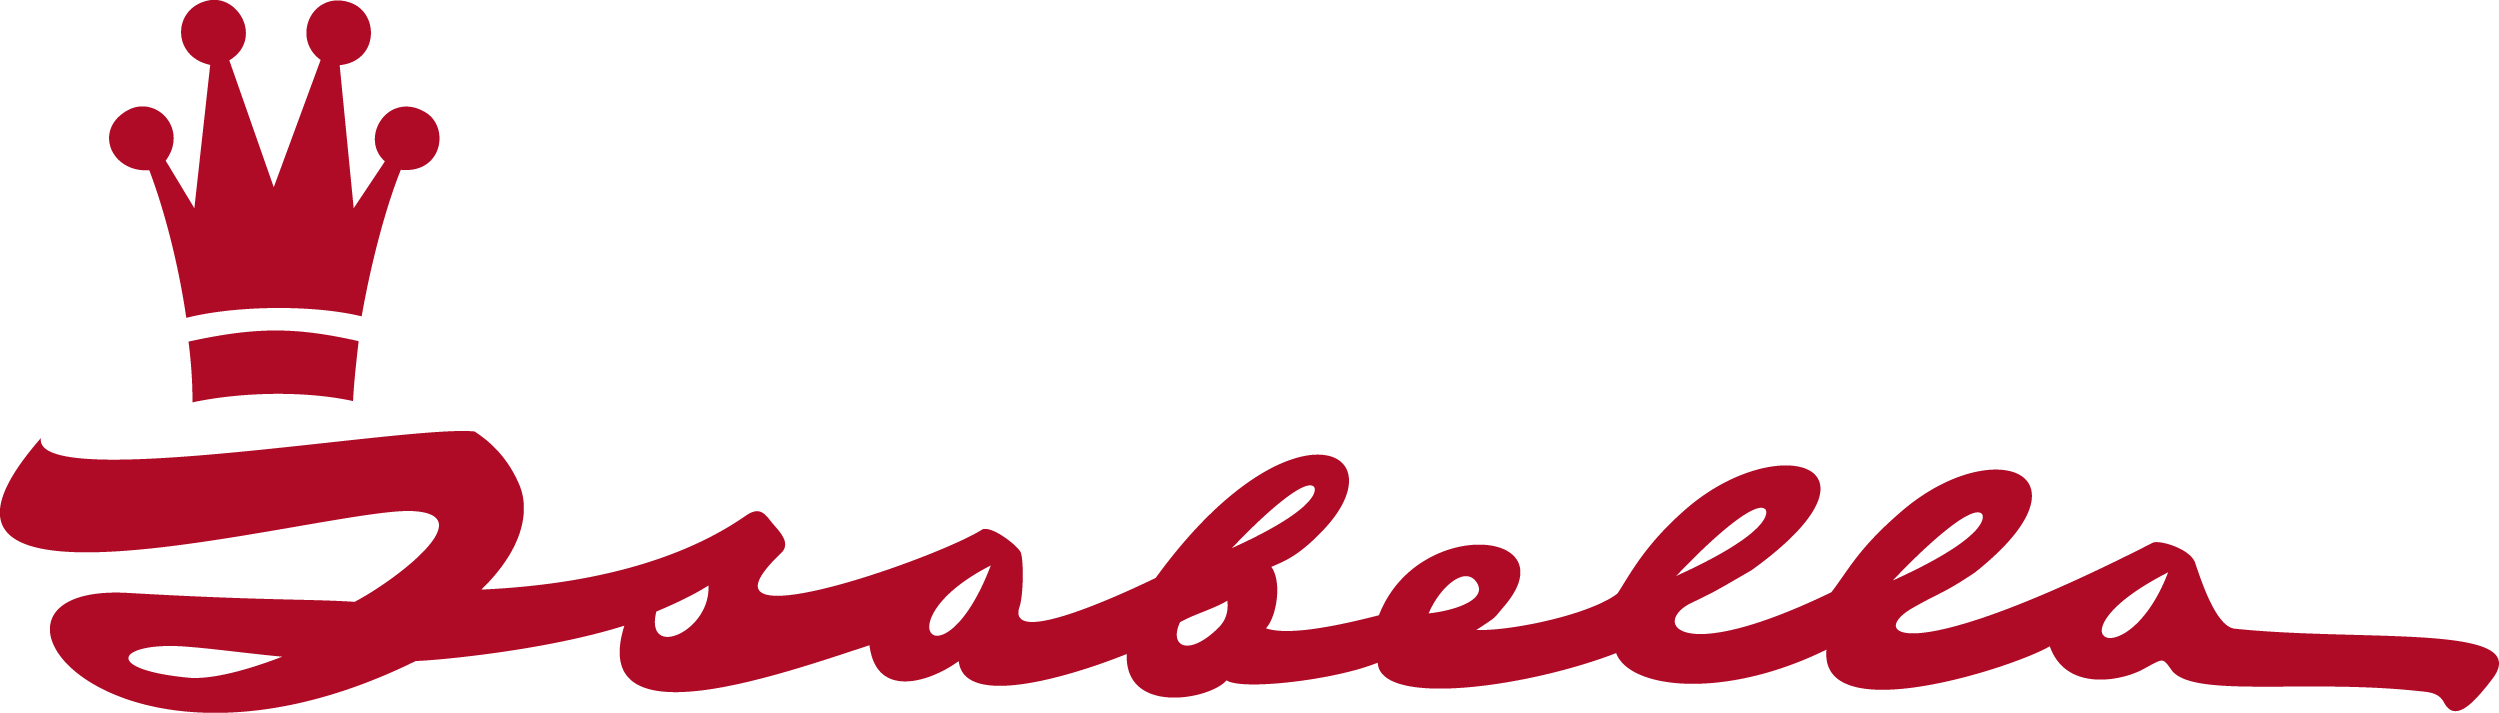 Isabella logo red RGB